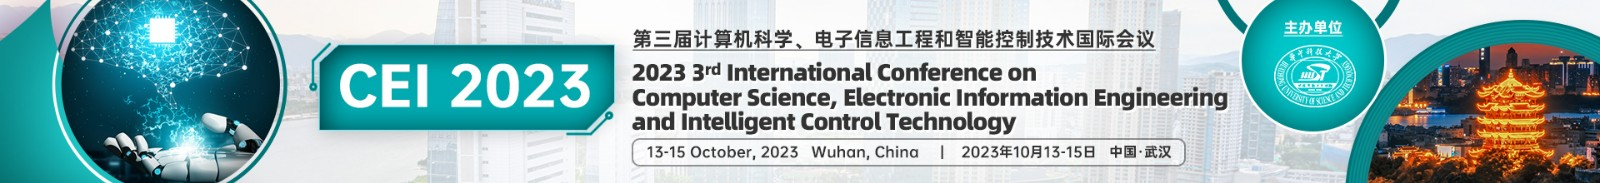 10月武汉-CEI-2023-学术会议云.jpg